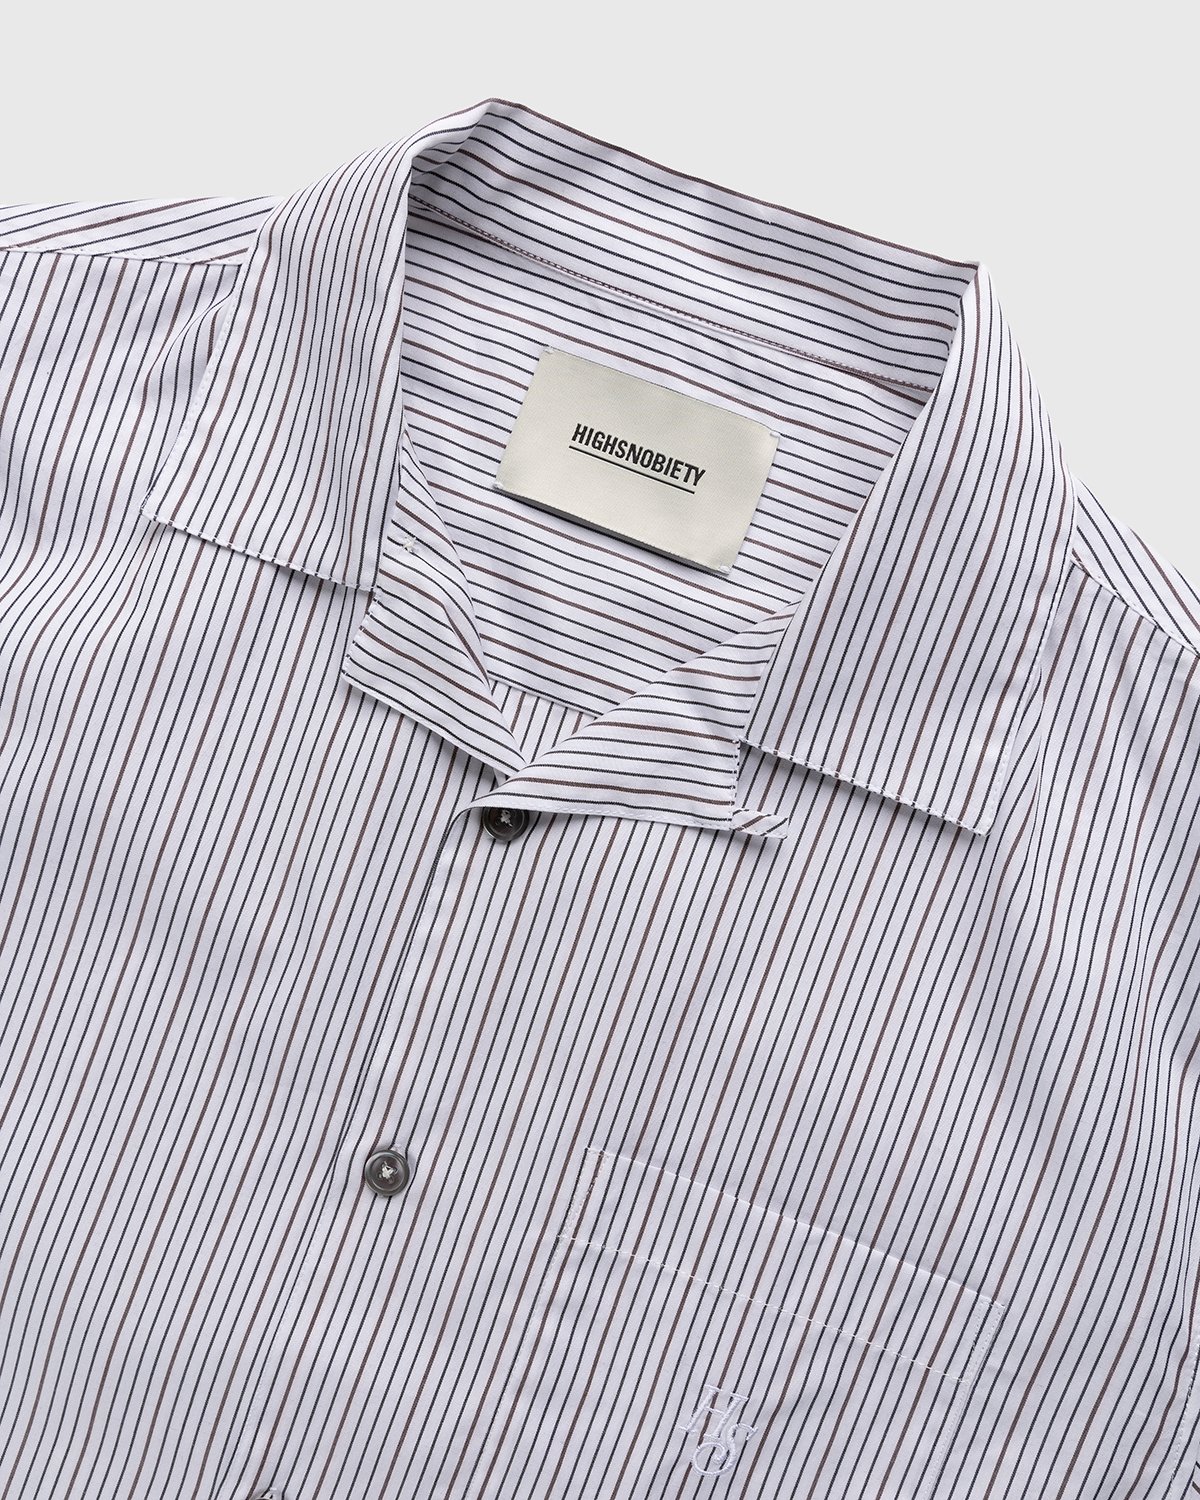 Highsnobiety - Striped Poplin Short-Sleeve Shirt White/Black - Clothing - White - Image 3